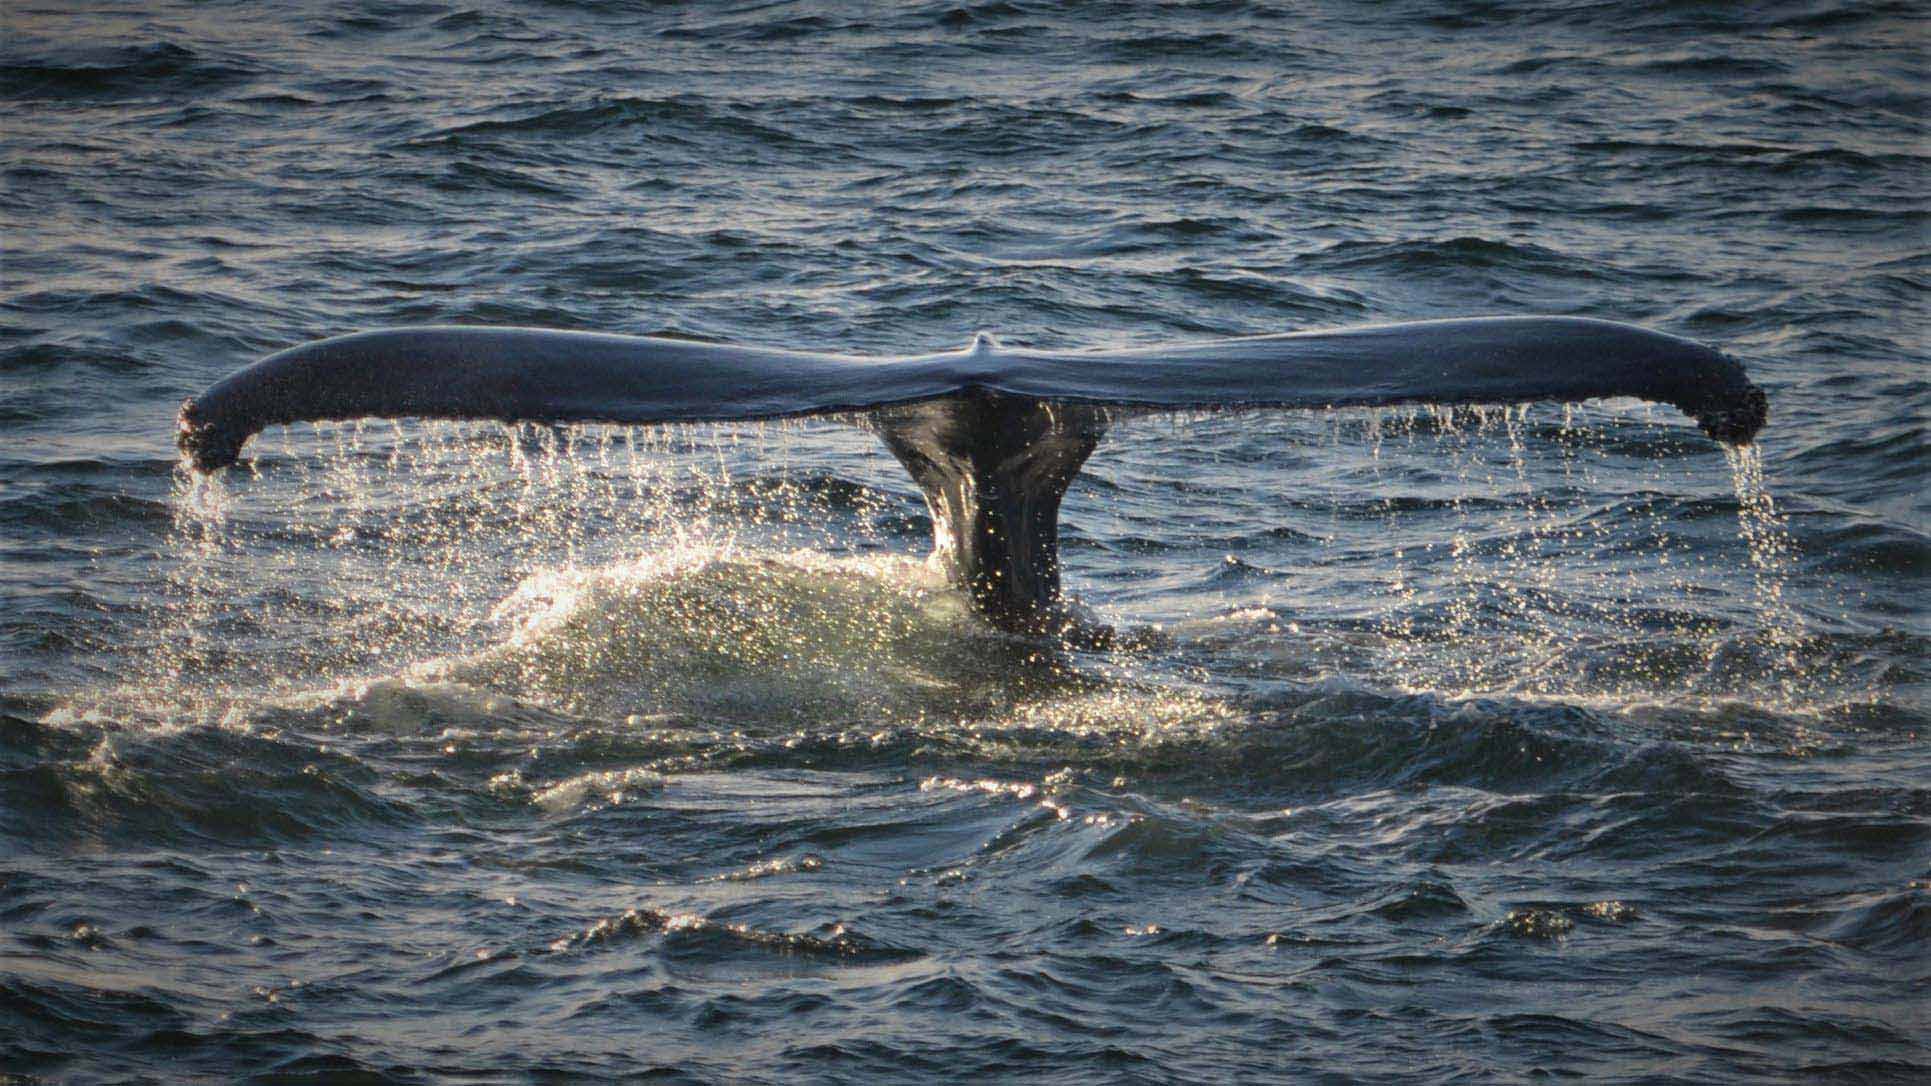 Das Wasser am Schwanz des Wals strömt ab, bevor er unter Wasser abtaucht.